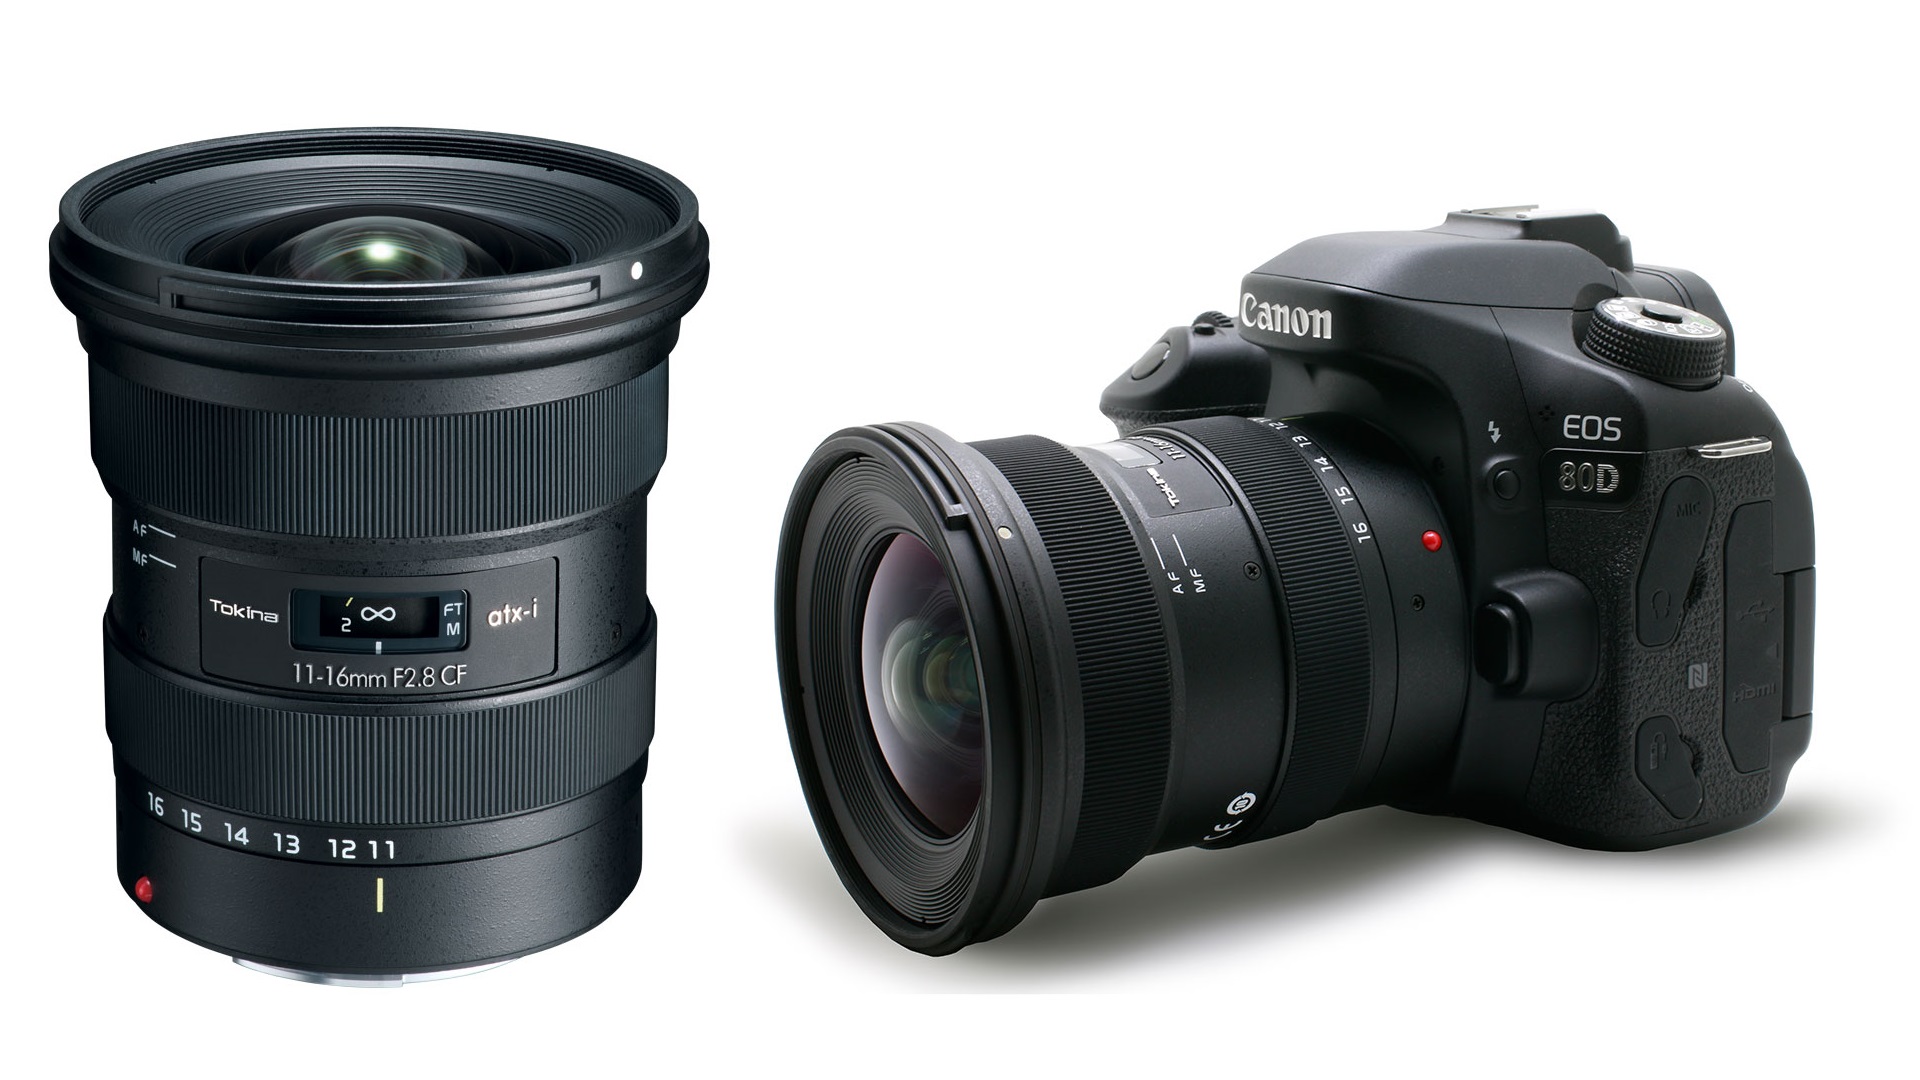 Anunciaron el lente Tokina atx-i 11-16mm f/2.8 CF - Regresa el popular ultra-angular